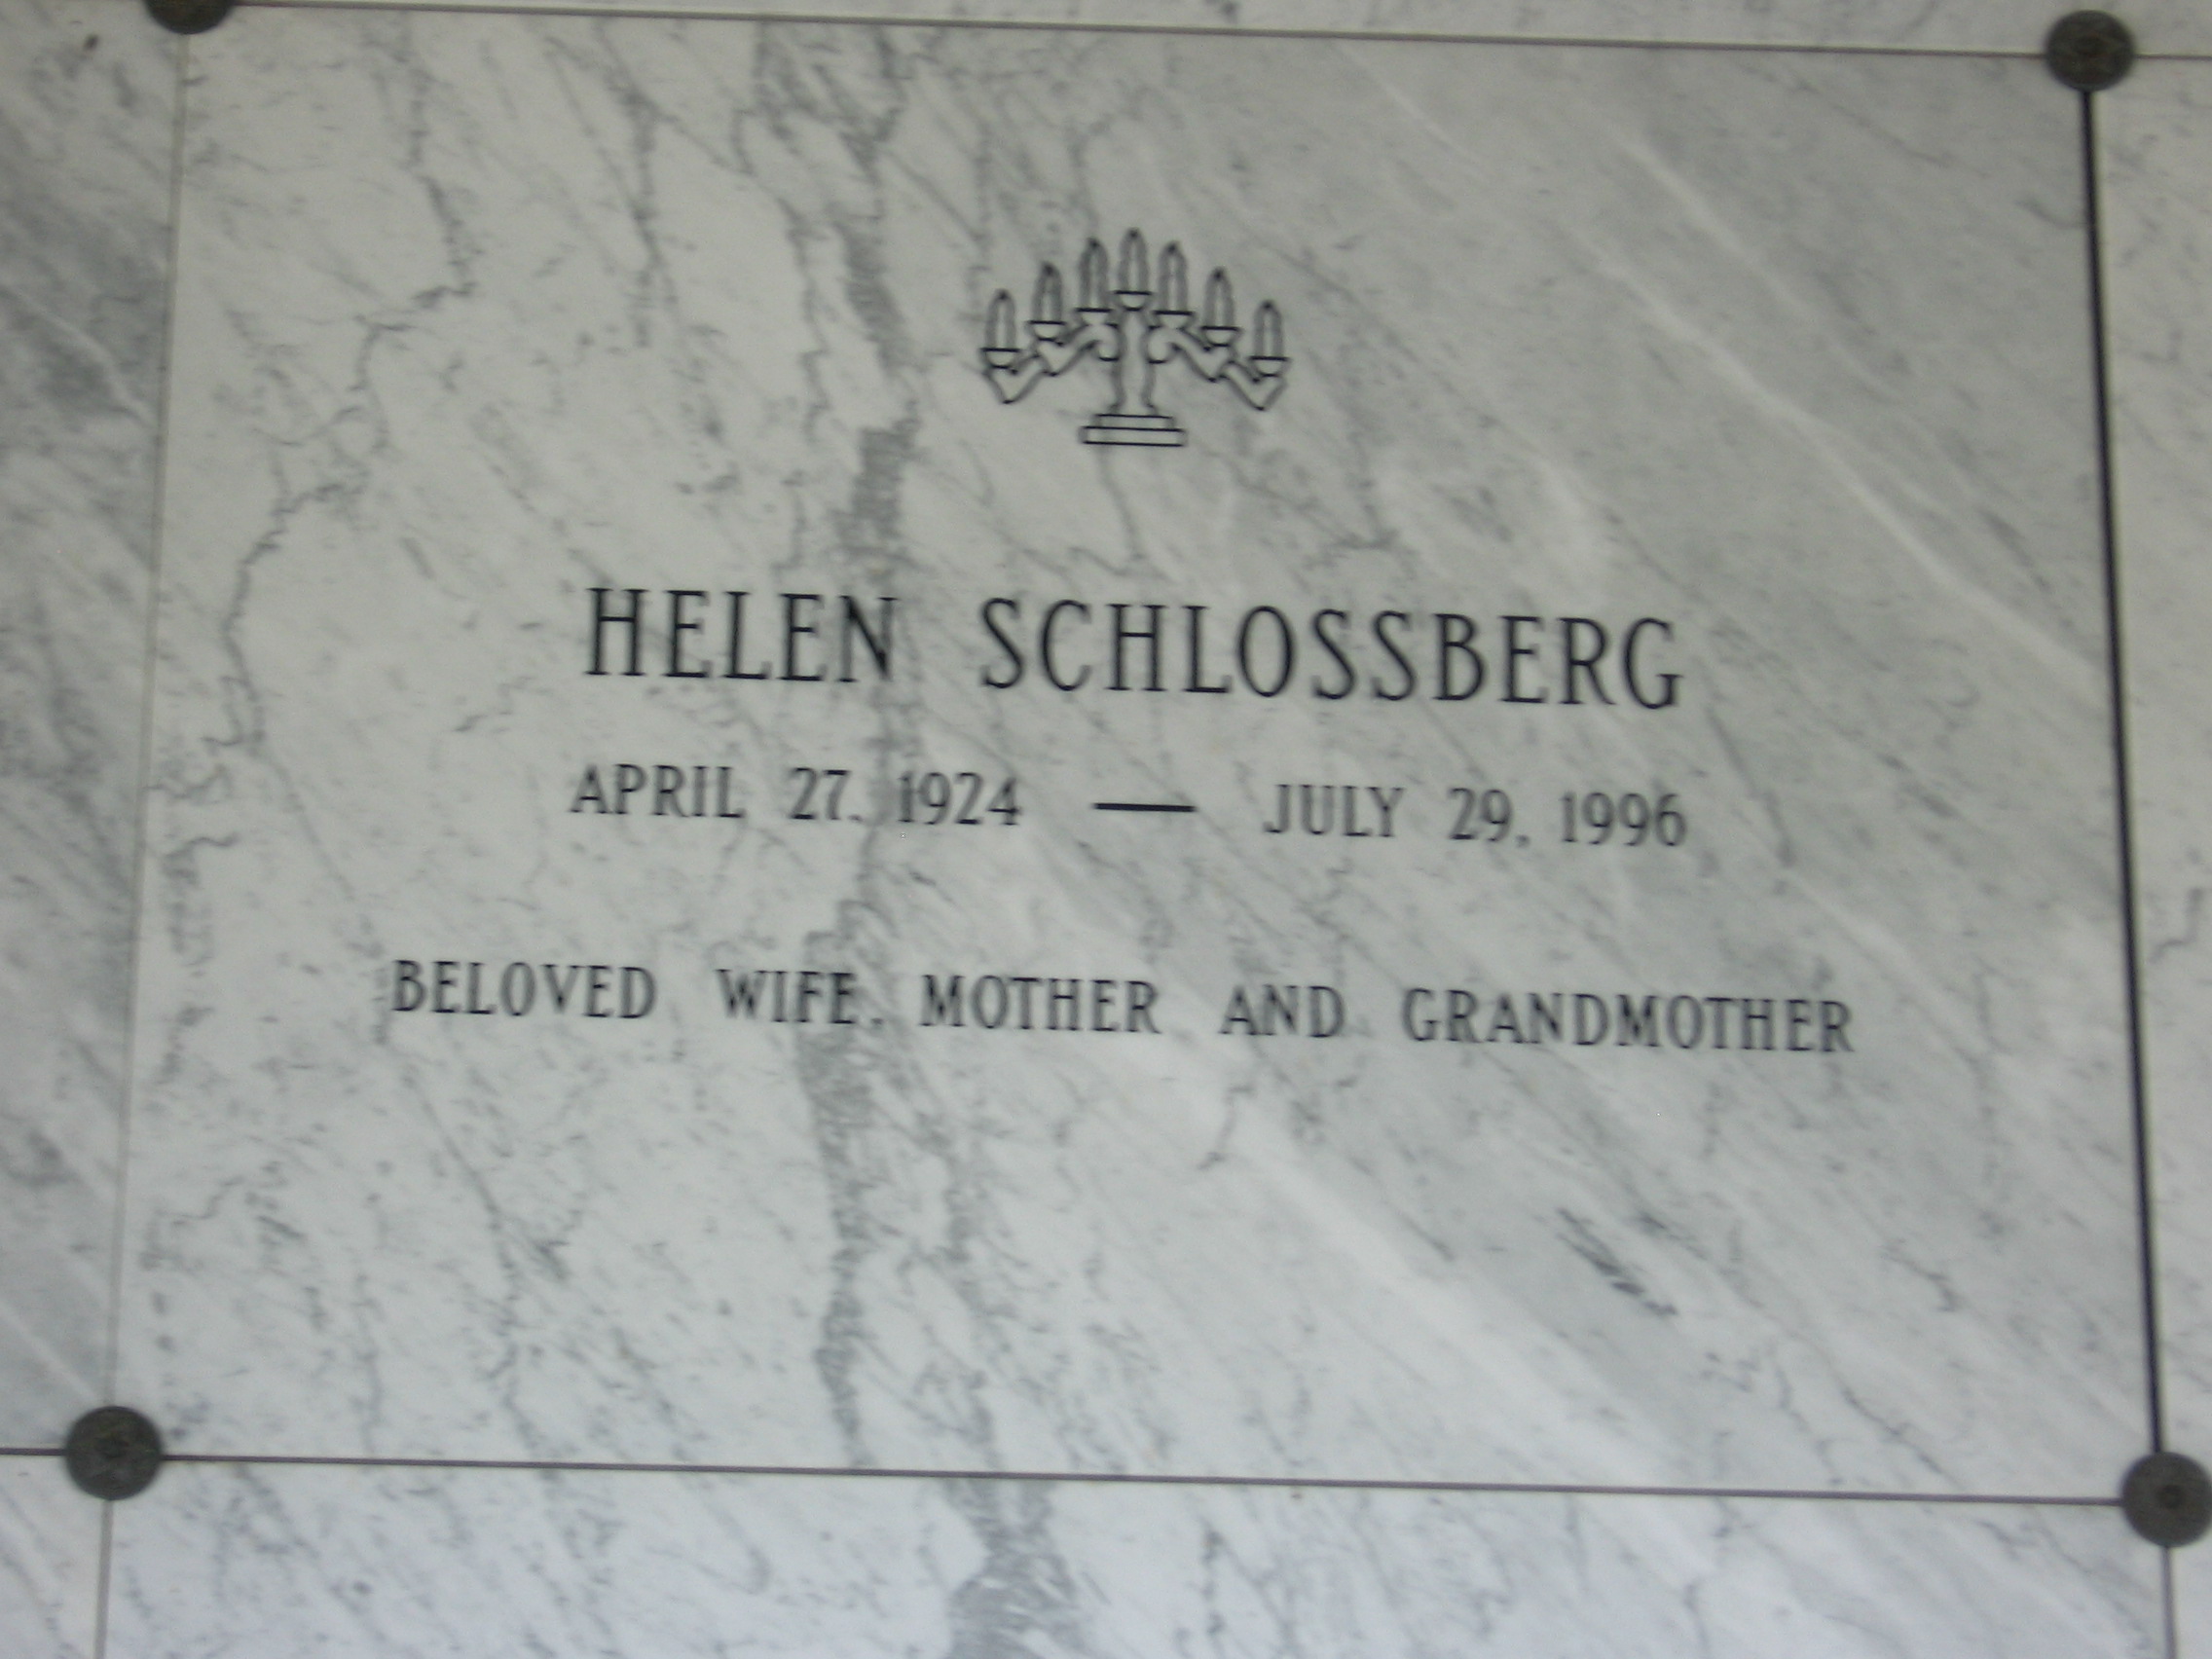 Helen Schlossberg